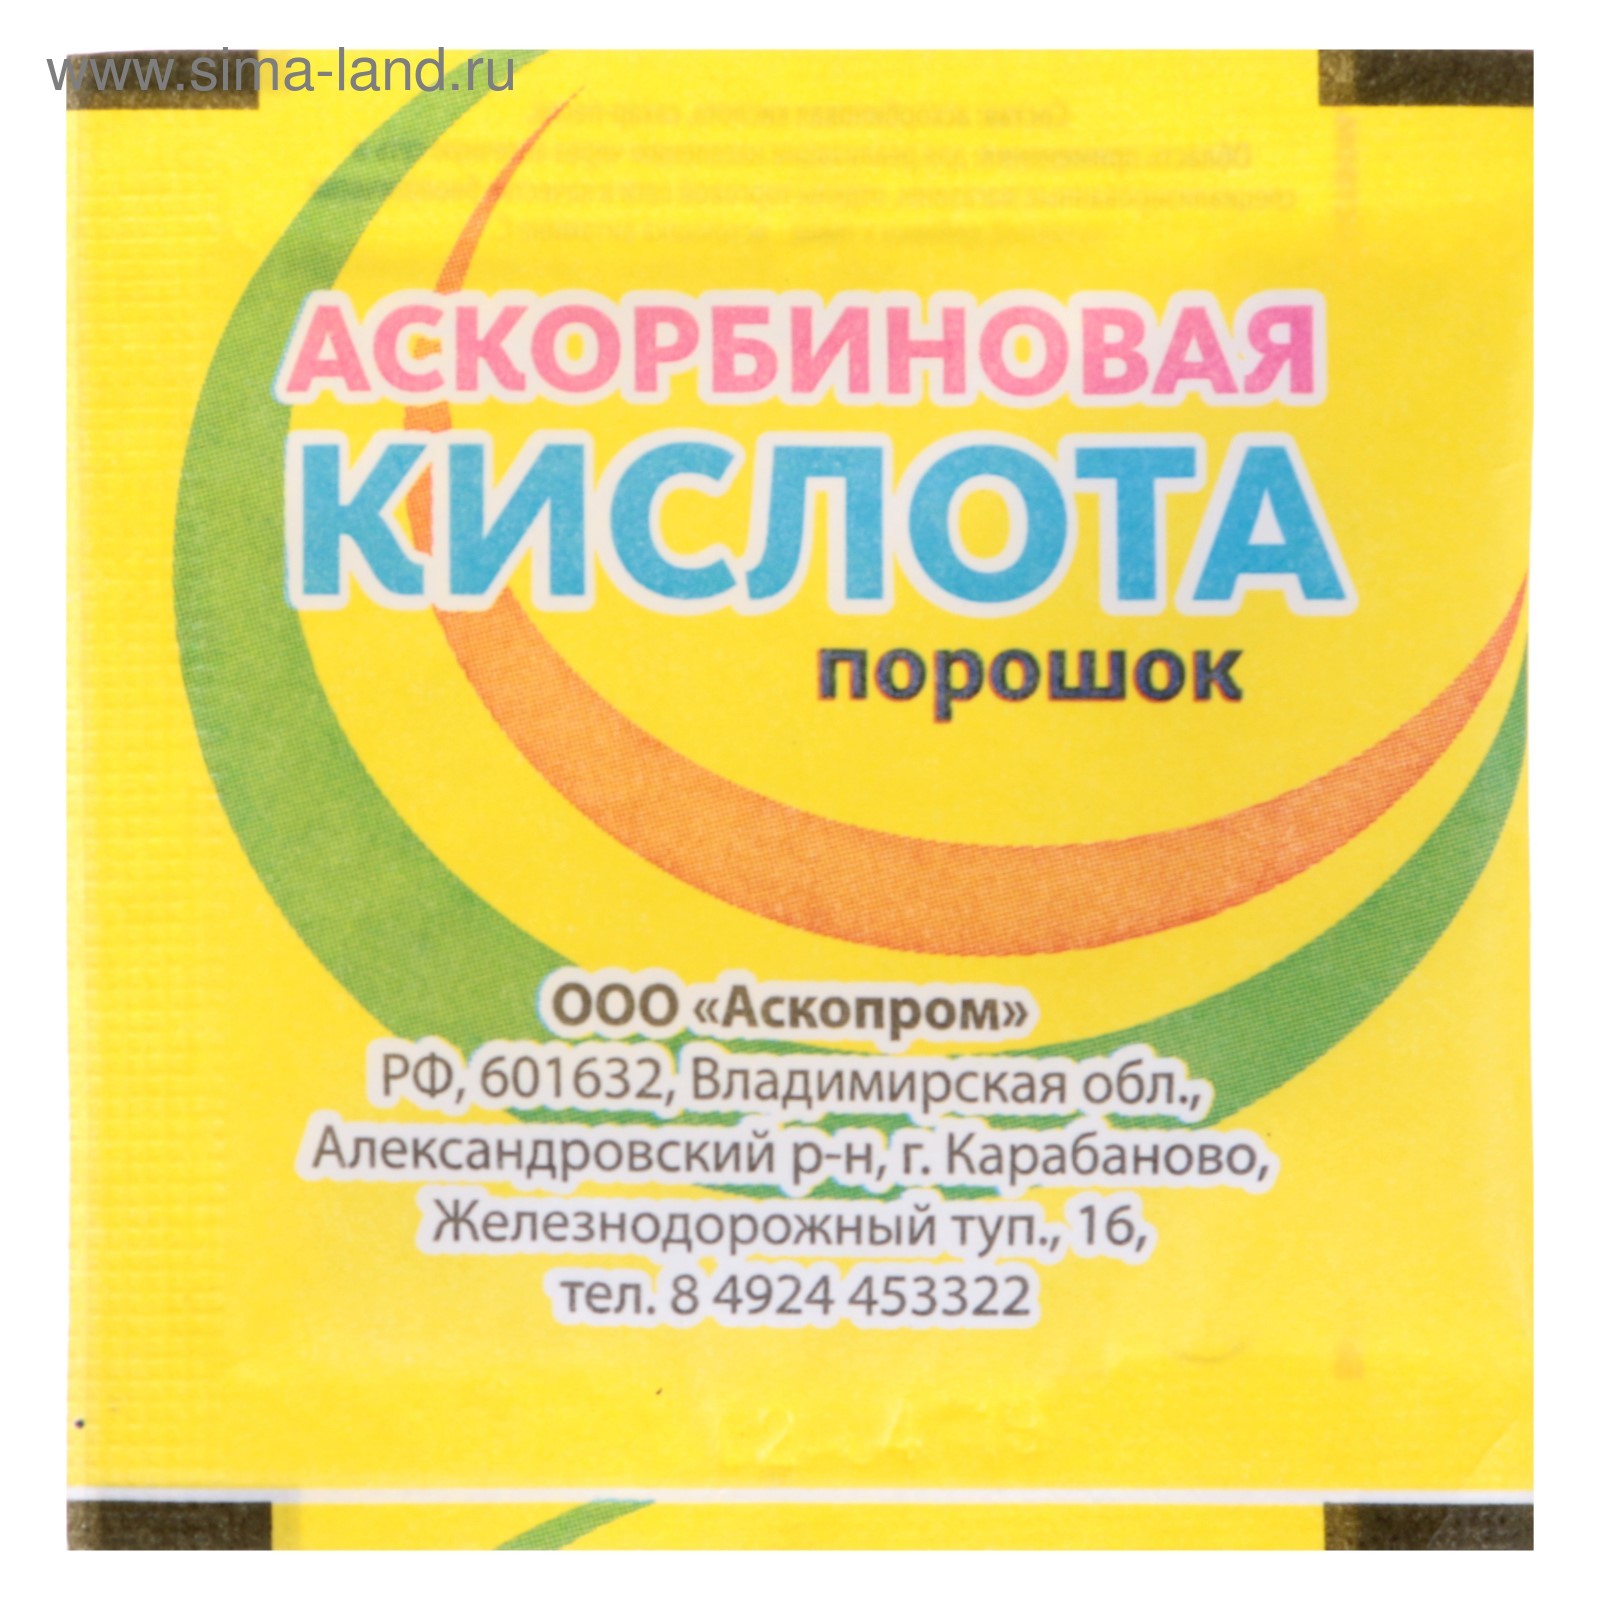 Аскорбиновая кислота порошок, 2,5 гр (4496683) - Купить по цене от 4.99 руб.